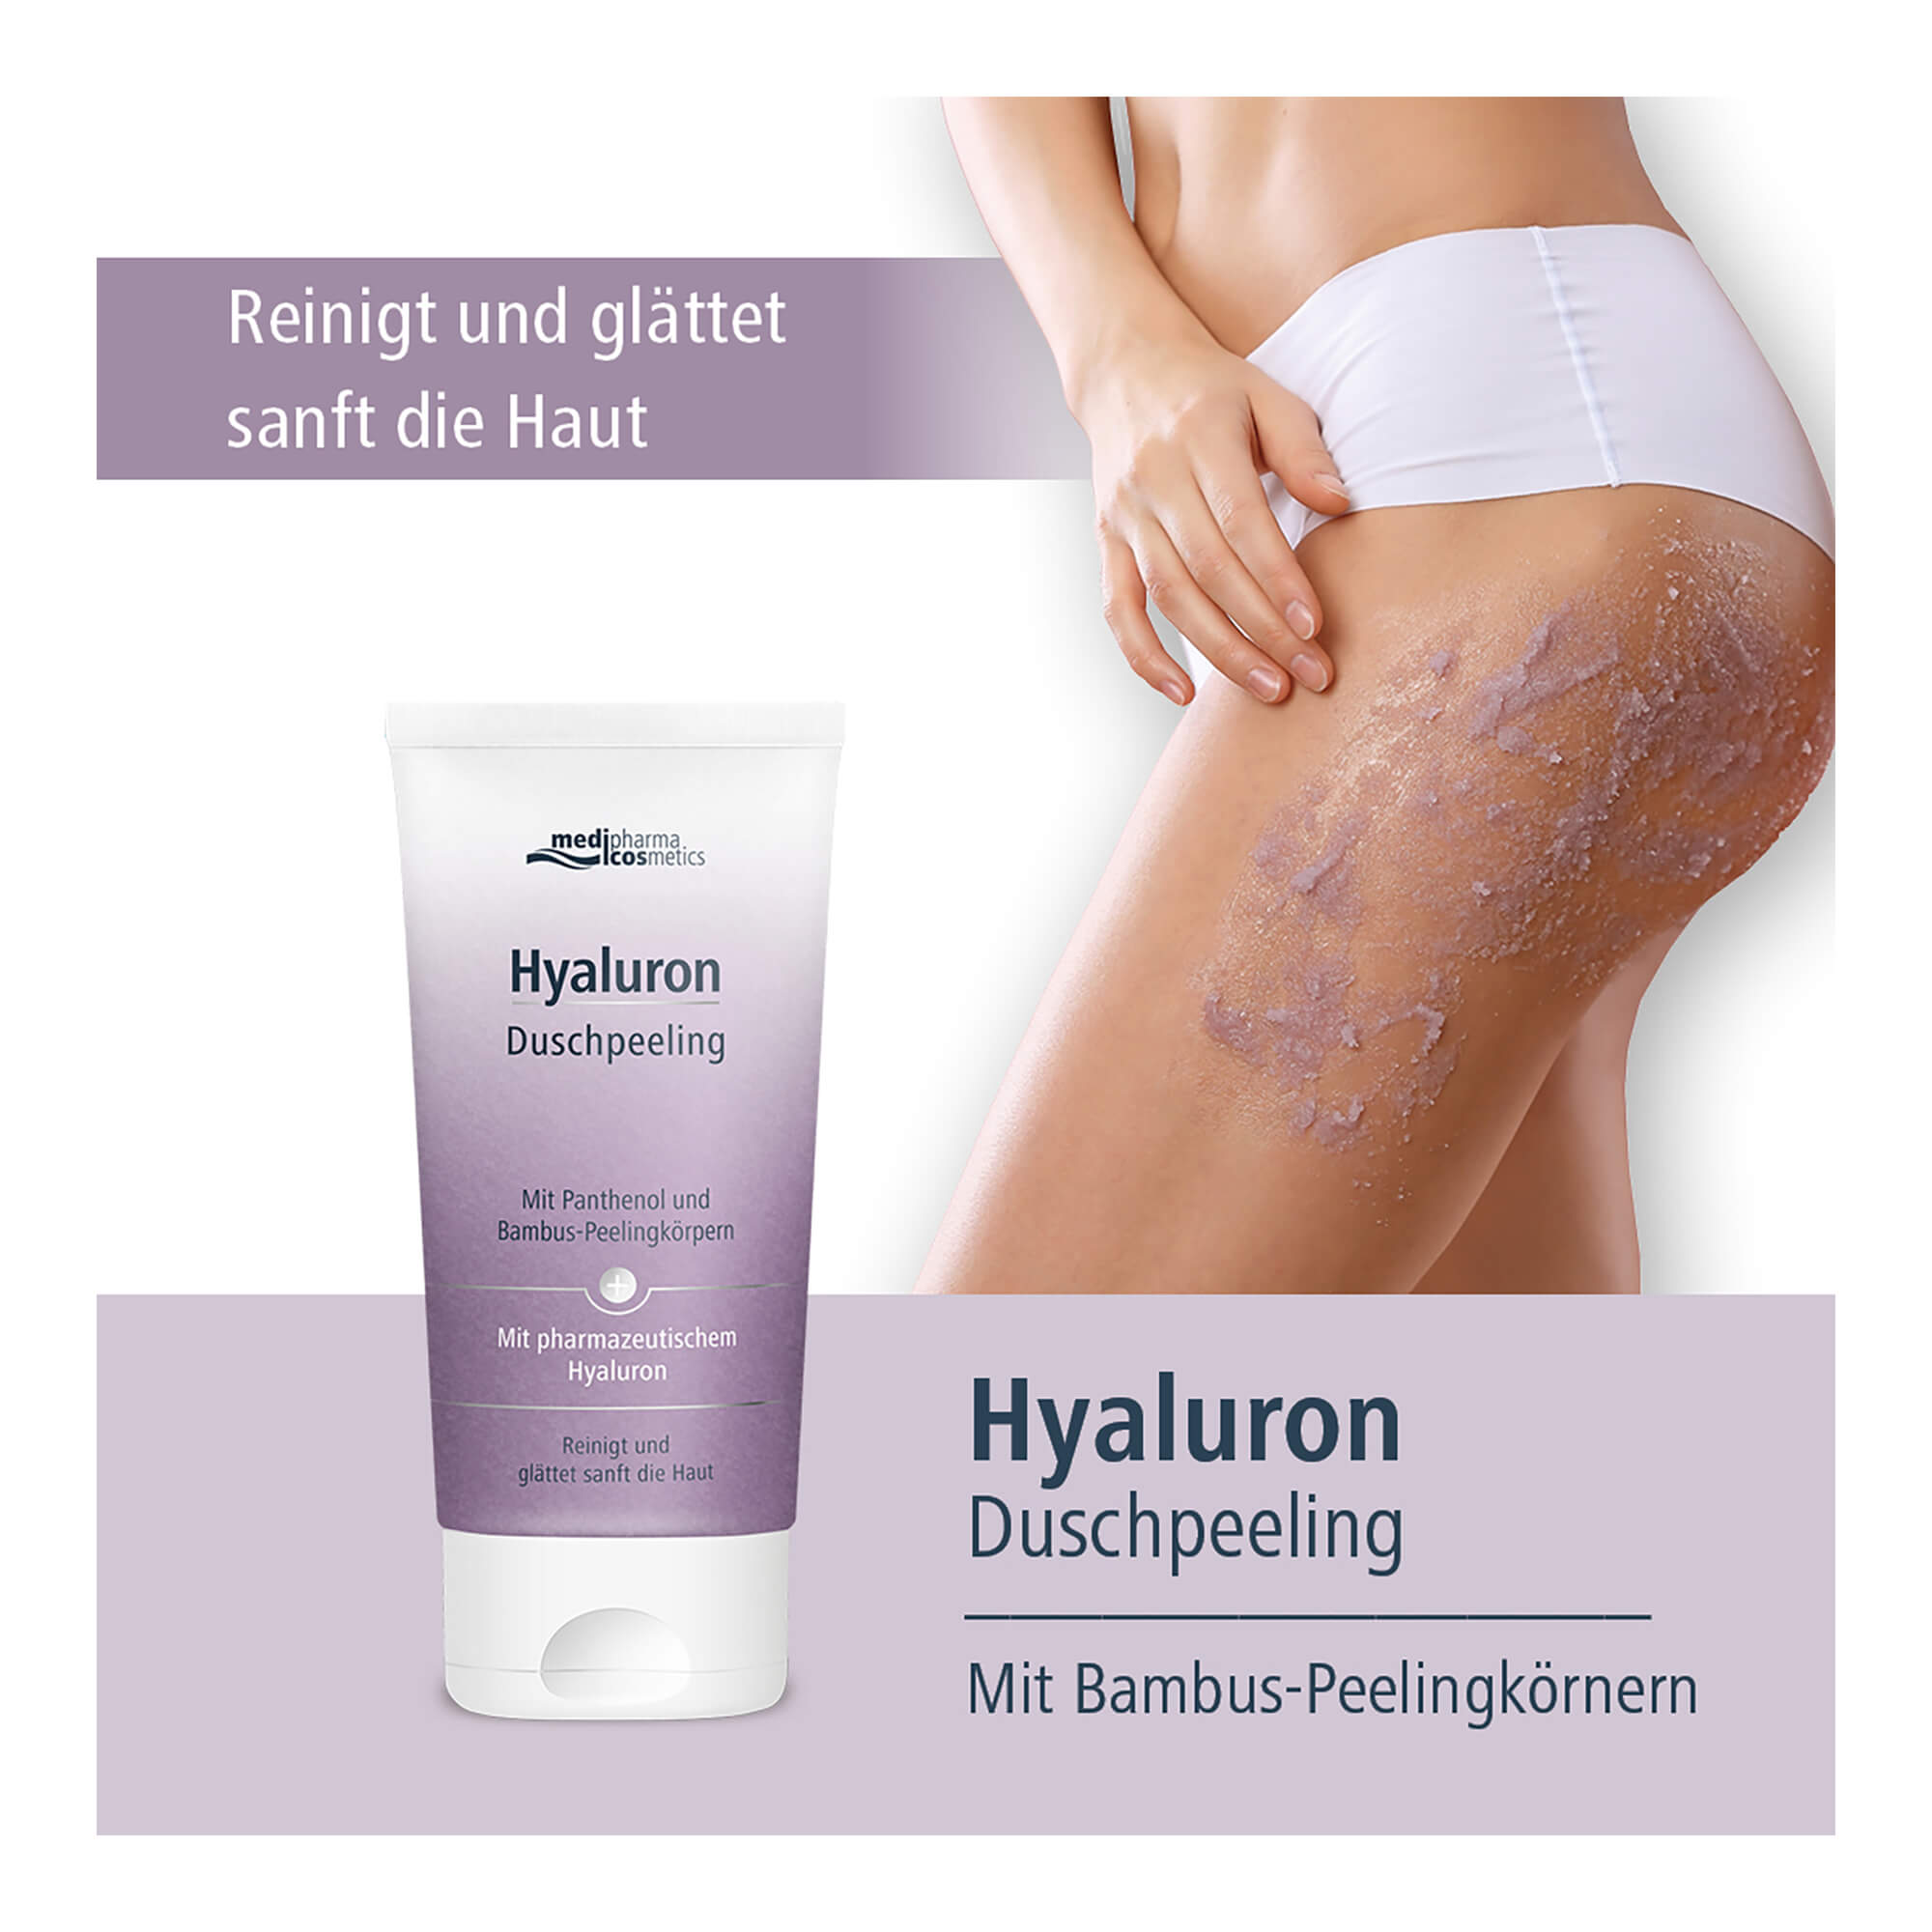 Medipharma cosmetics Hyaluron Duschpeeling